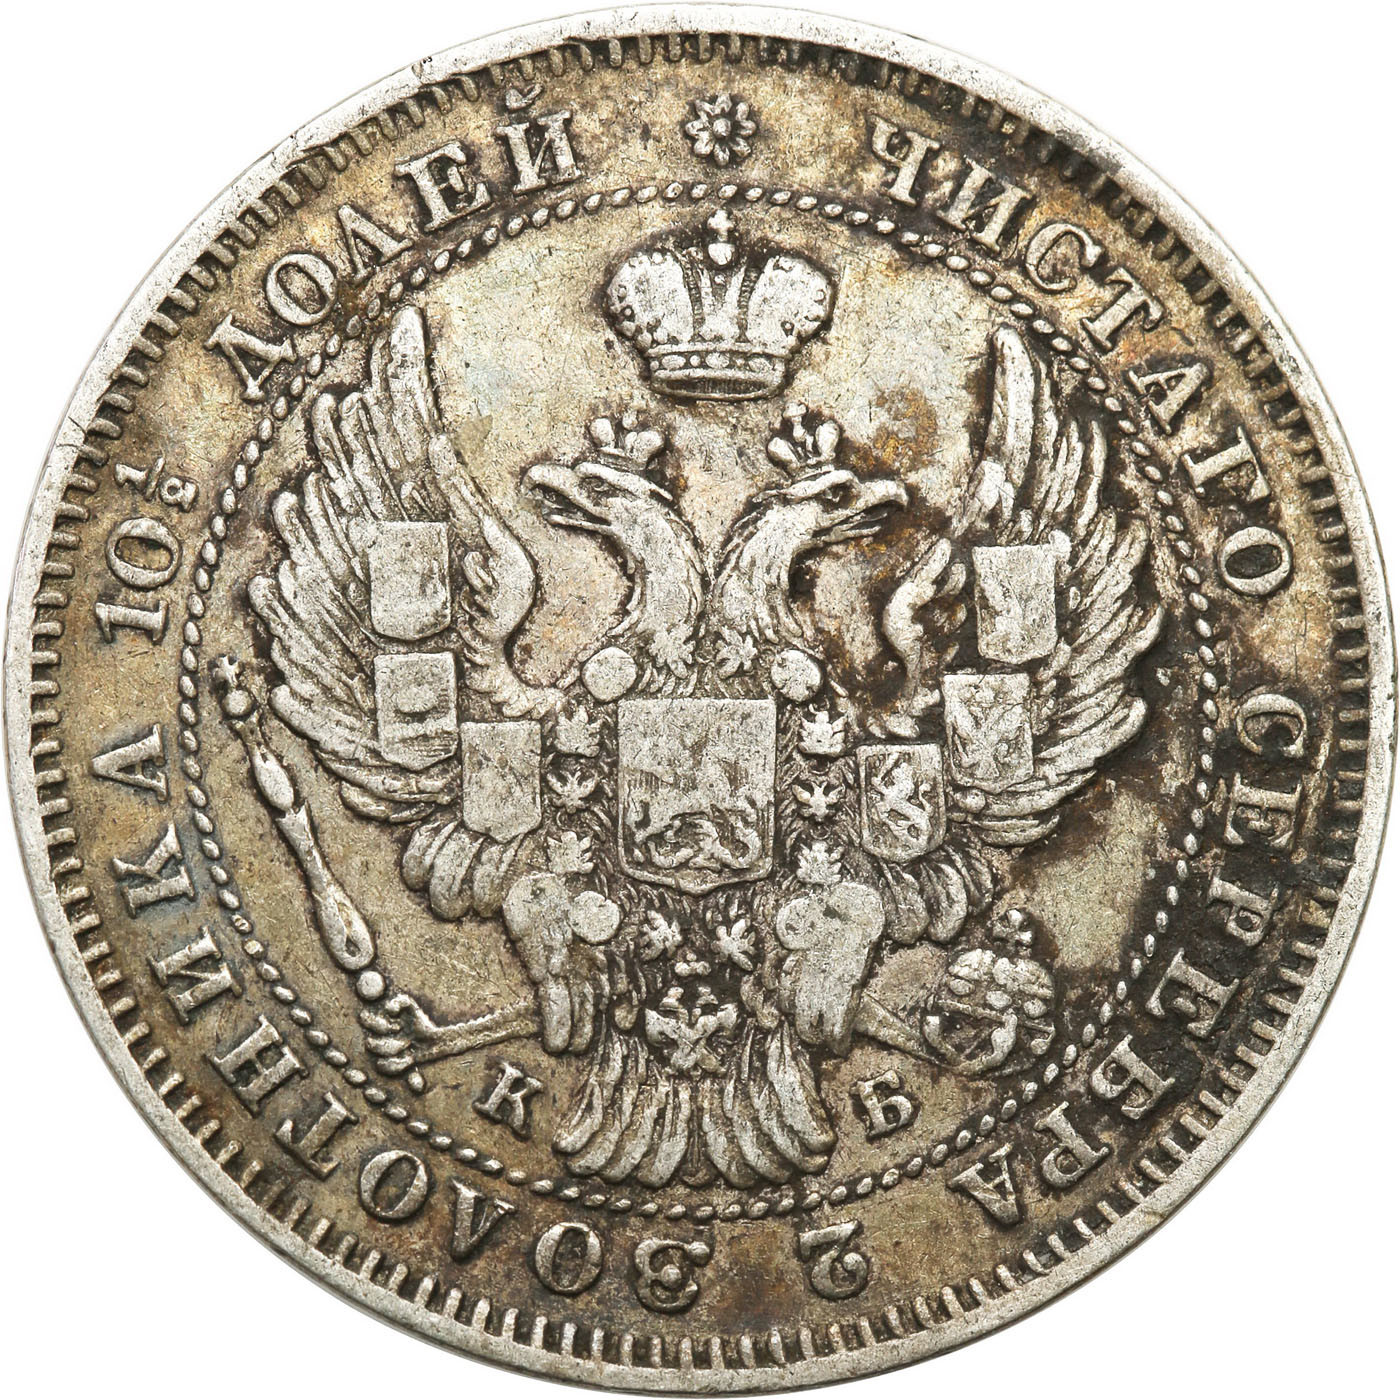 Rosja, Mikołaj I. Połtina (1/2 rubla) 1844 KB, Petersburg